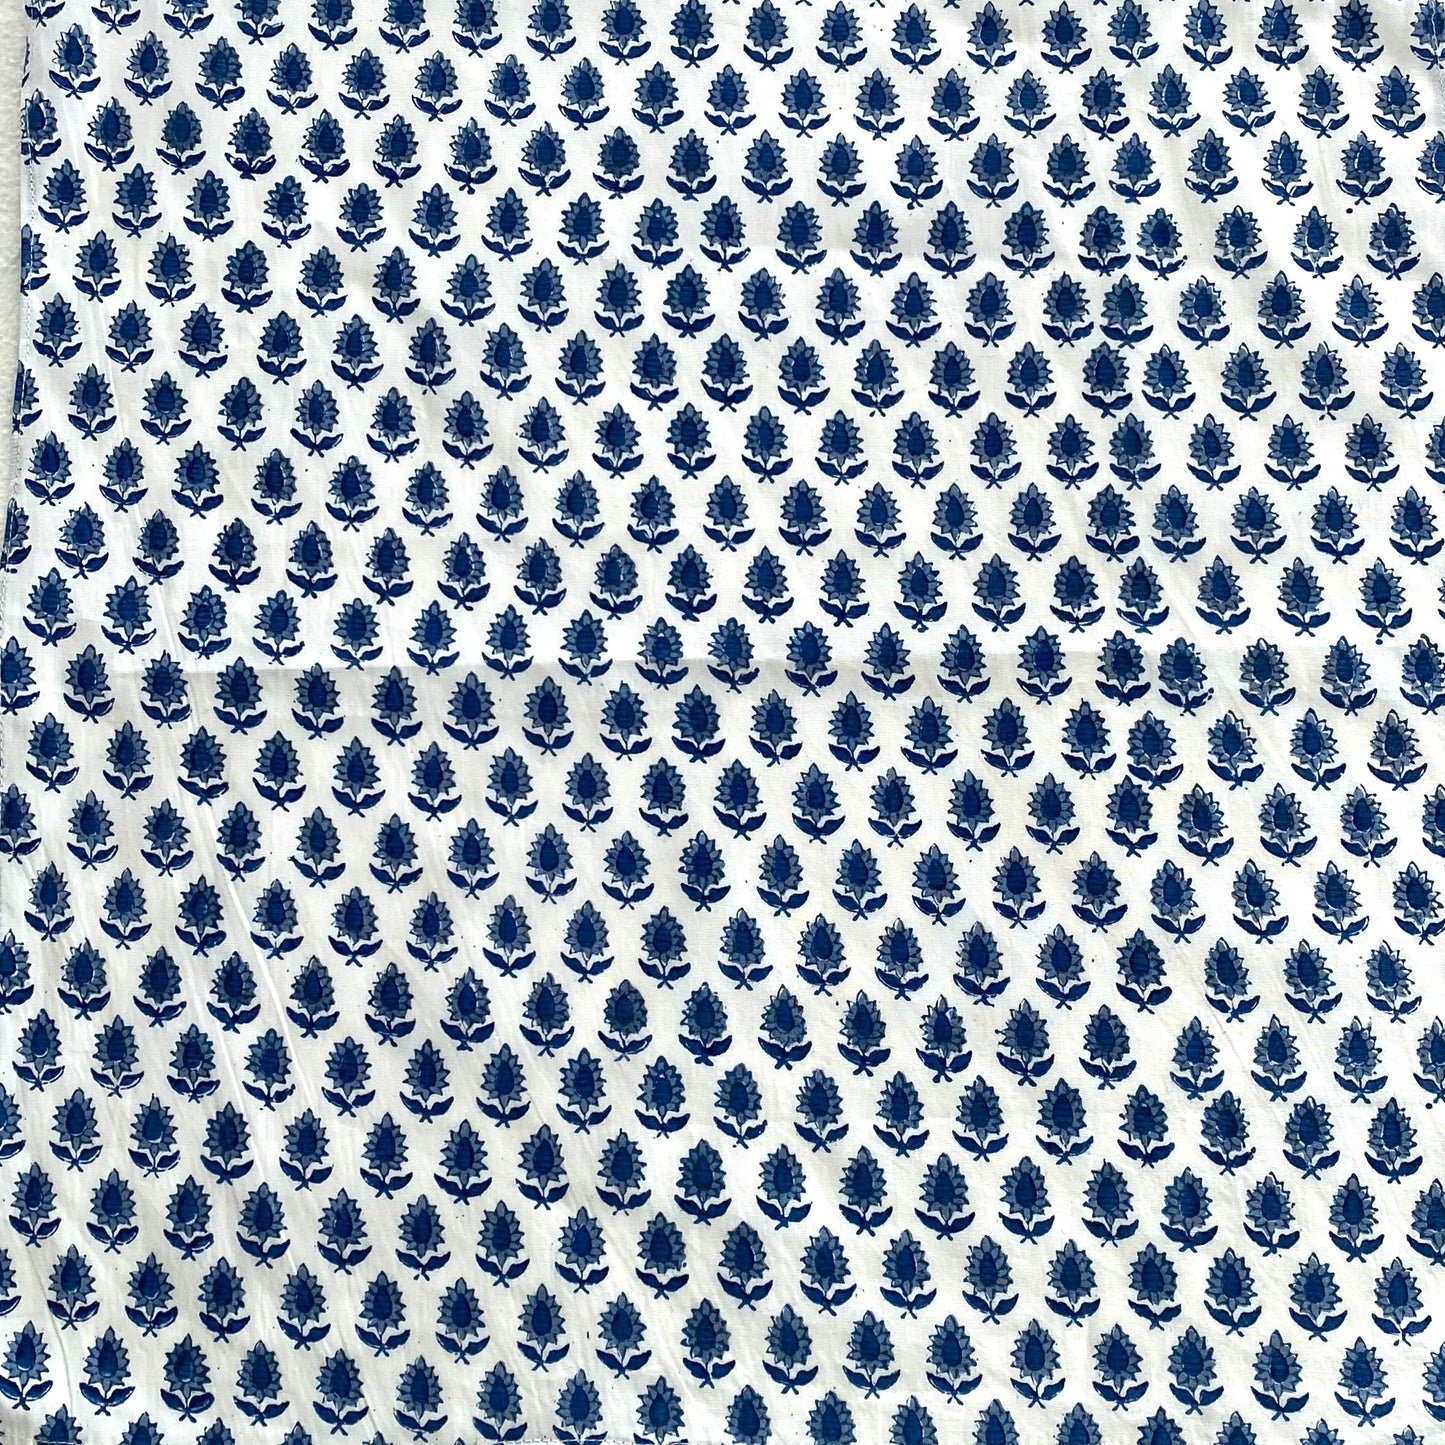 4 x block print tree cotton napkin blue and white